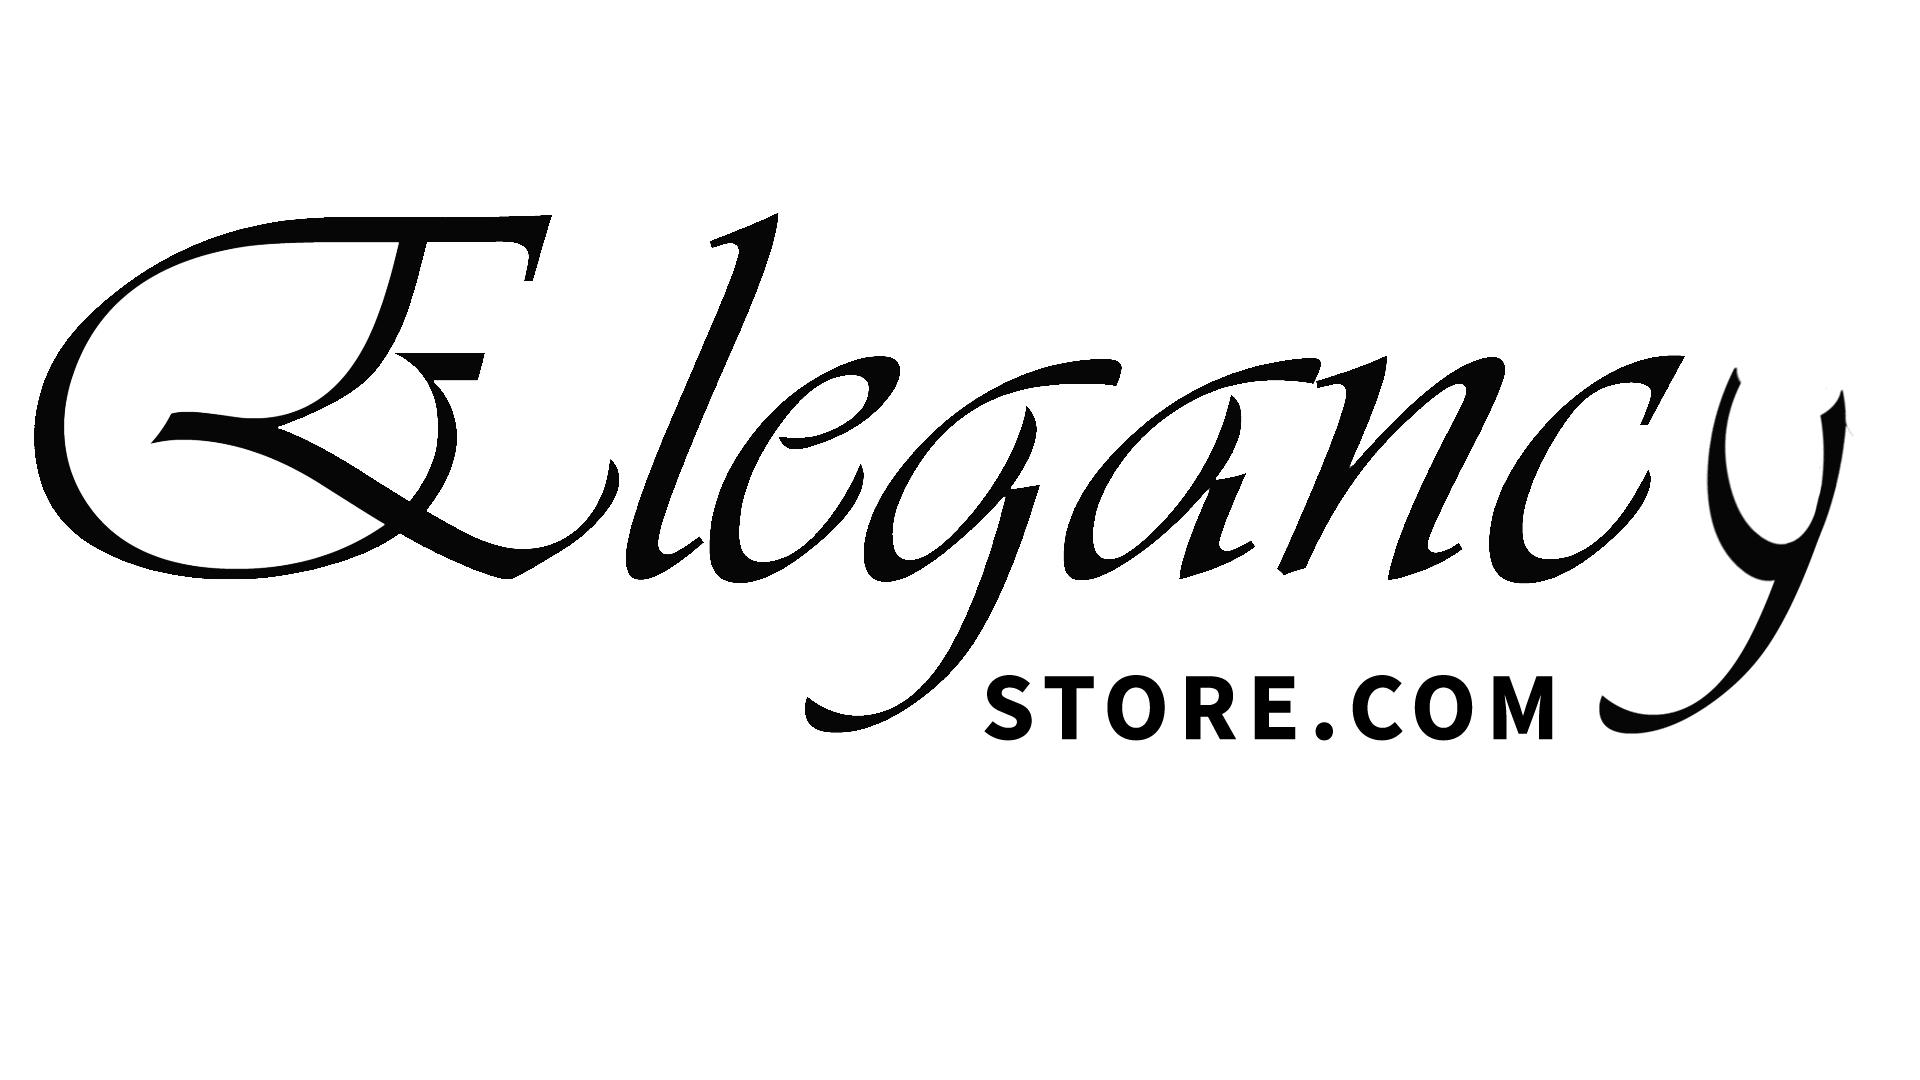 elegancystore.com 